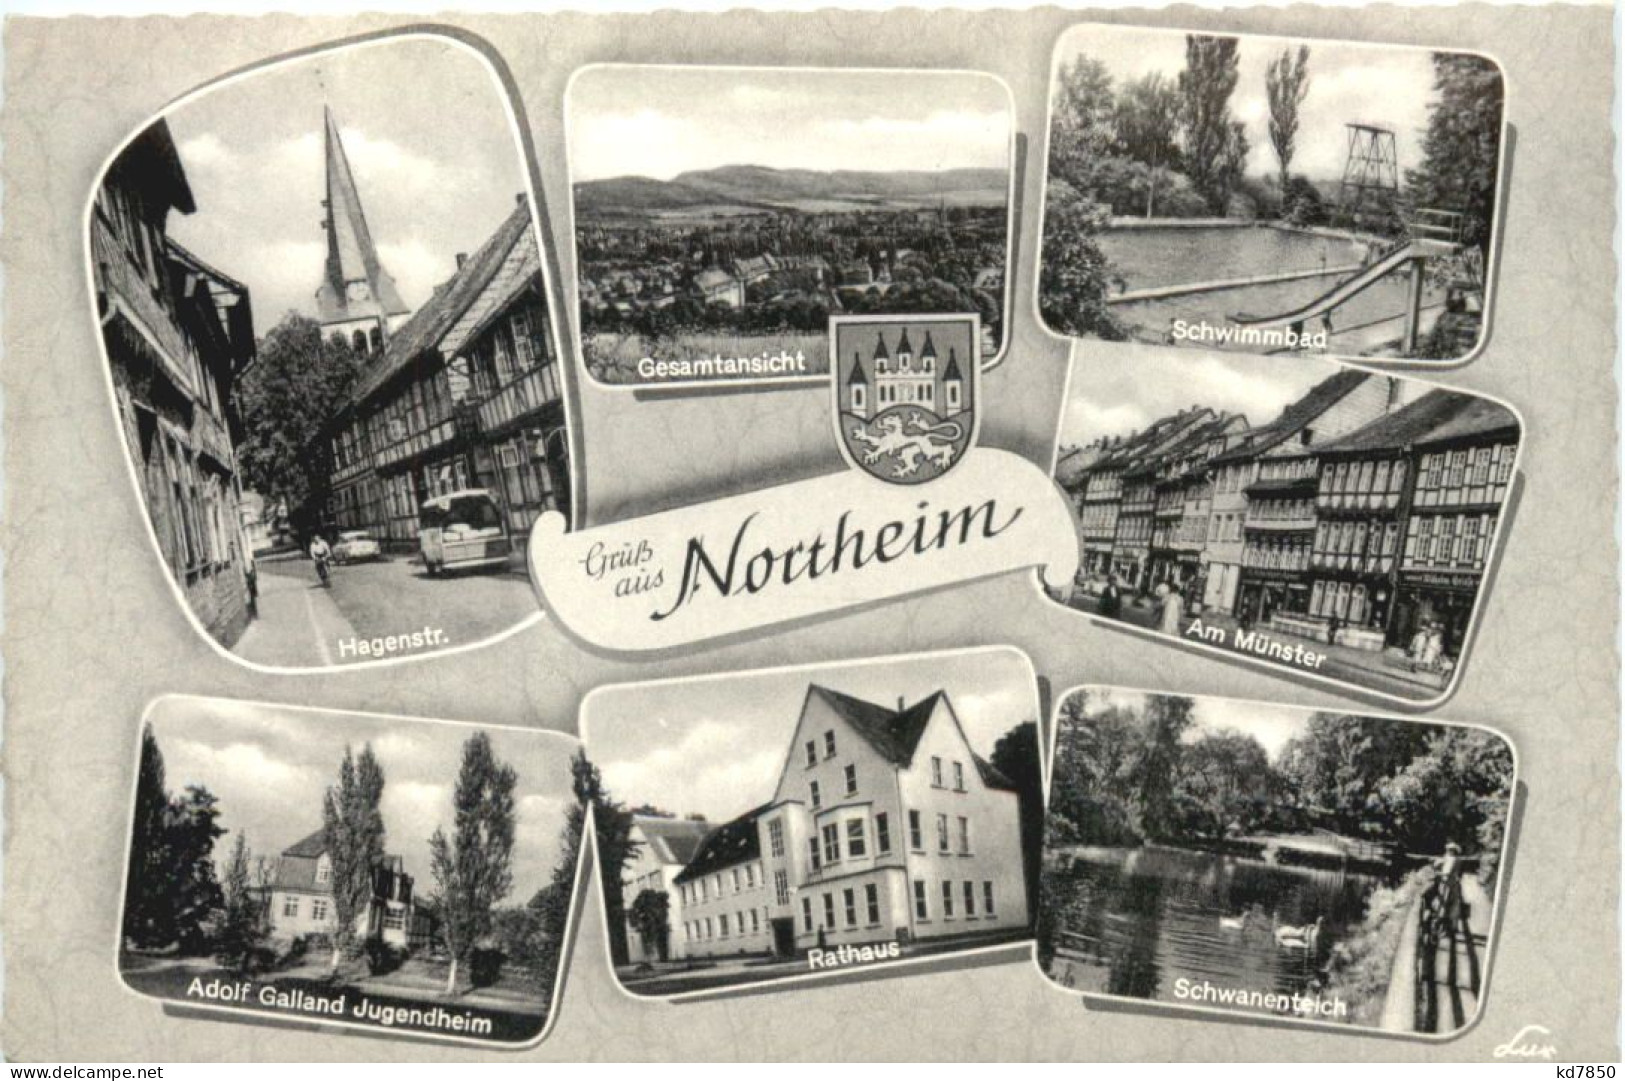 Northeim - Northeim